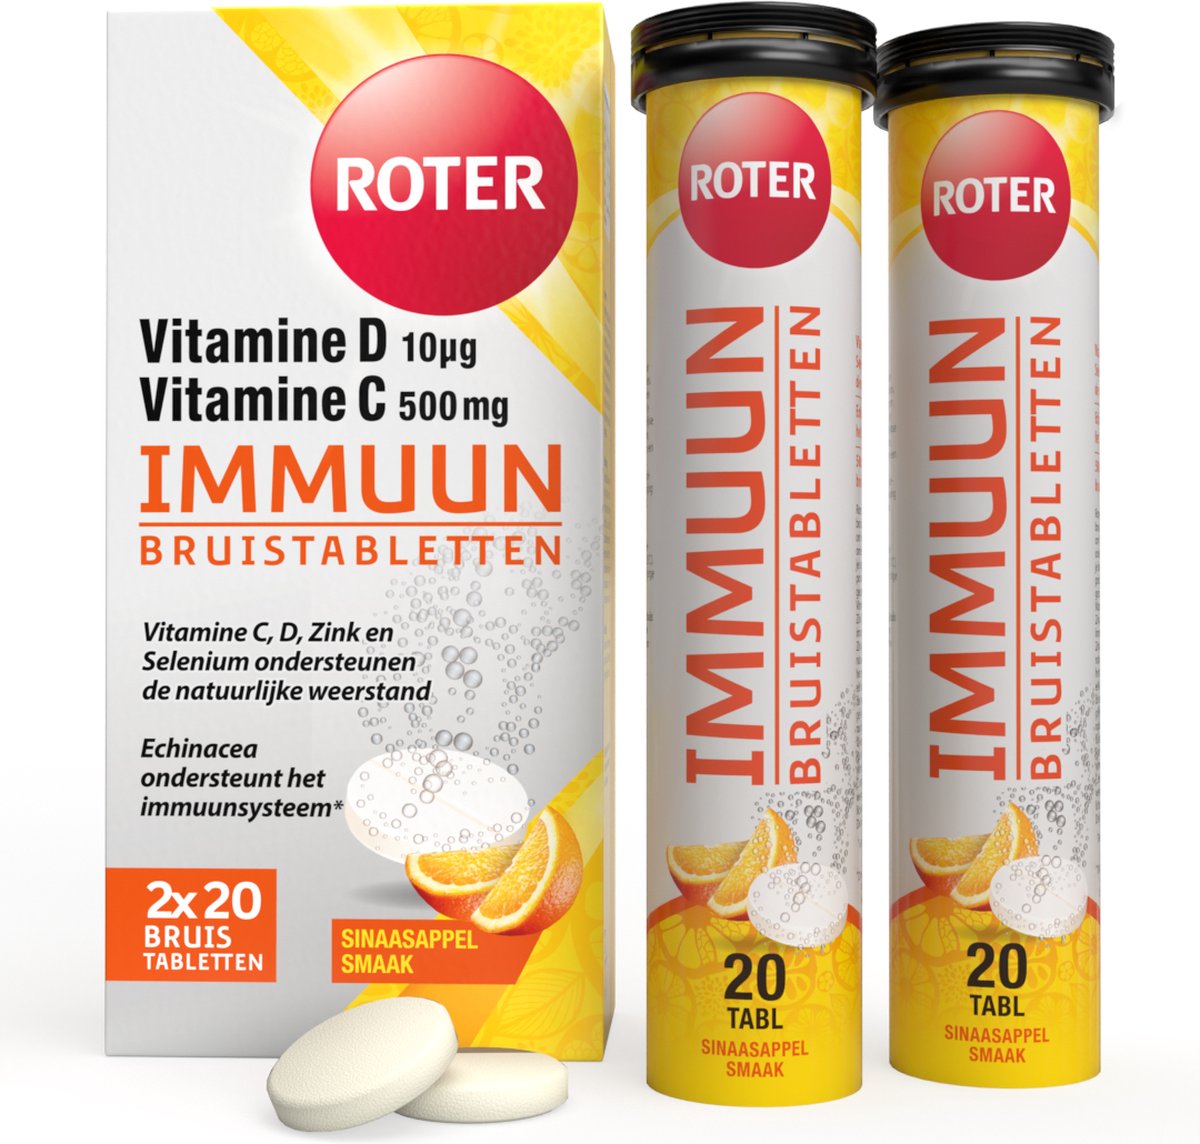 Roter Immuun Bruis - Vitamine C & D ondersteunen de weerstand & Echinacea verhoogt het immuunsysteem* - 40 bruistabletten